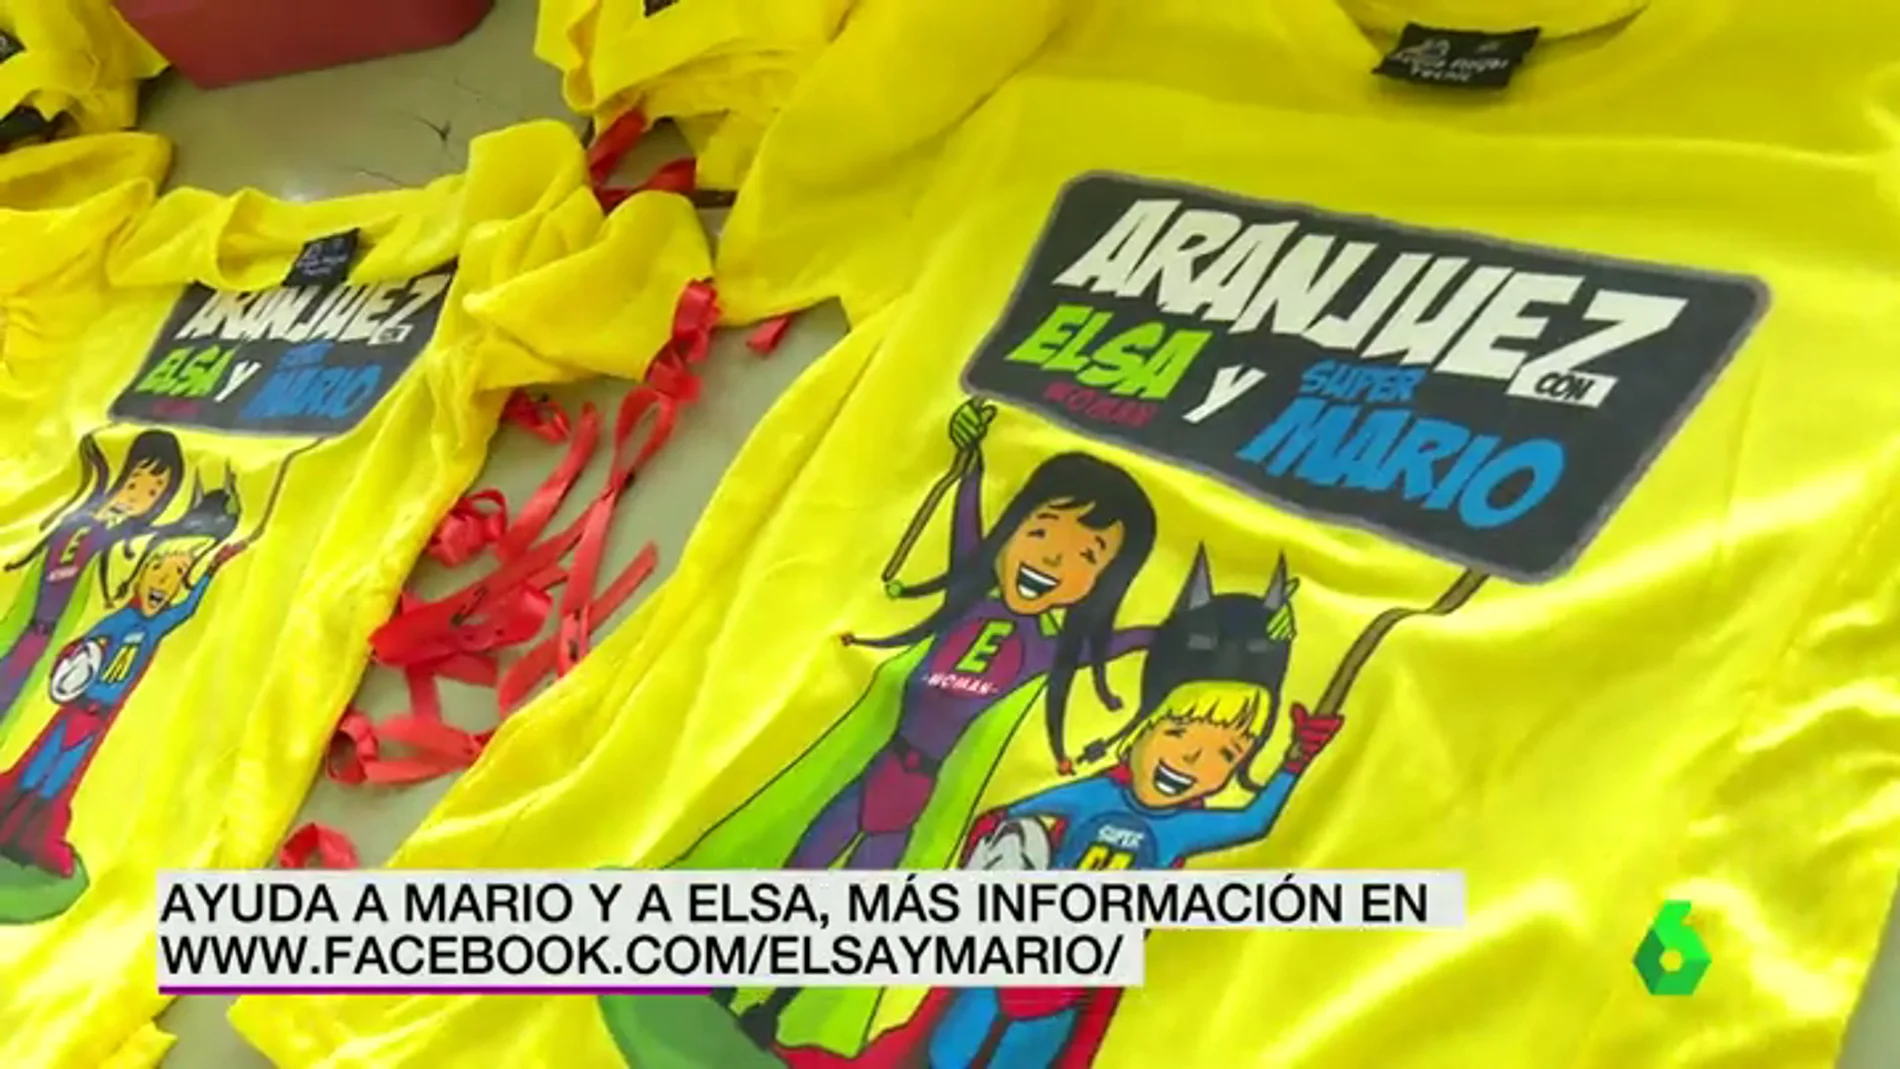 Acciones solidarias en Aranjuez para ayudar a Mario y Elsa, enfermos de ELA infantil